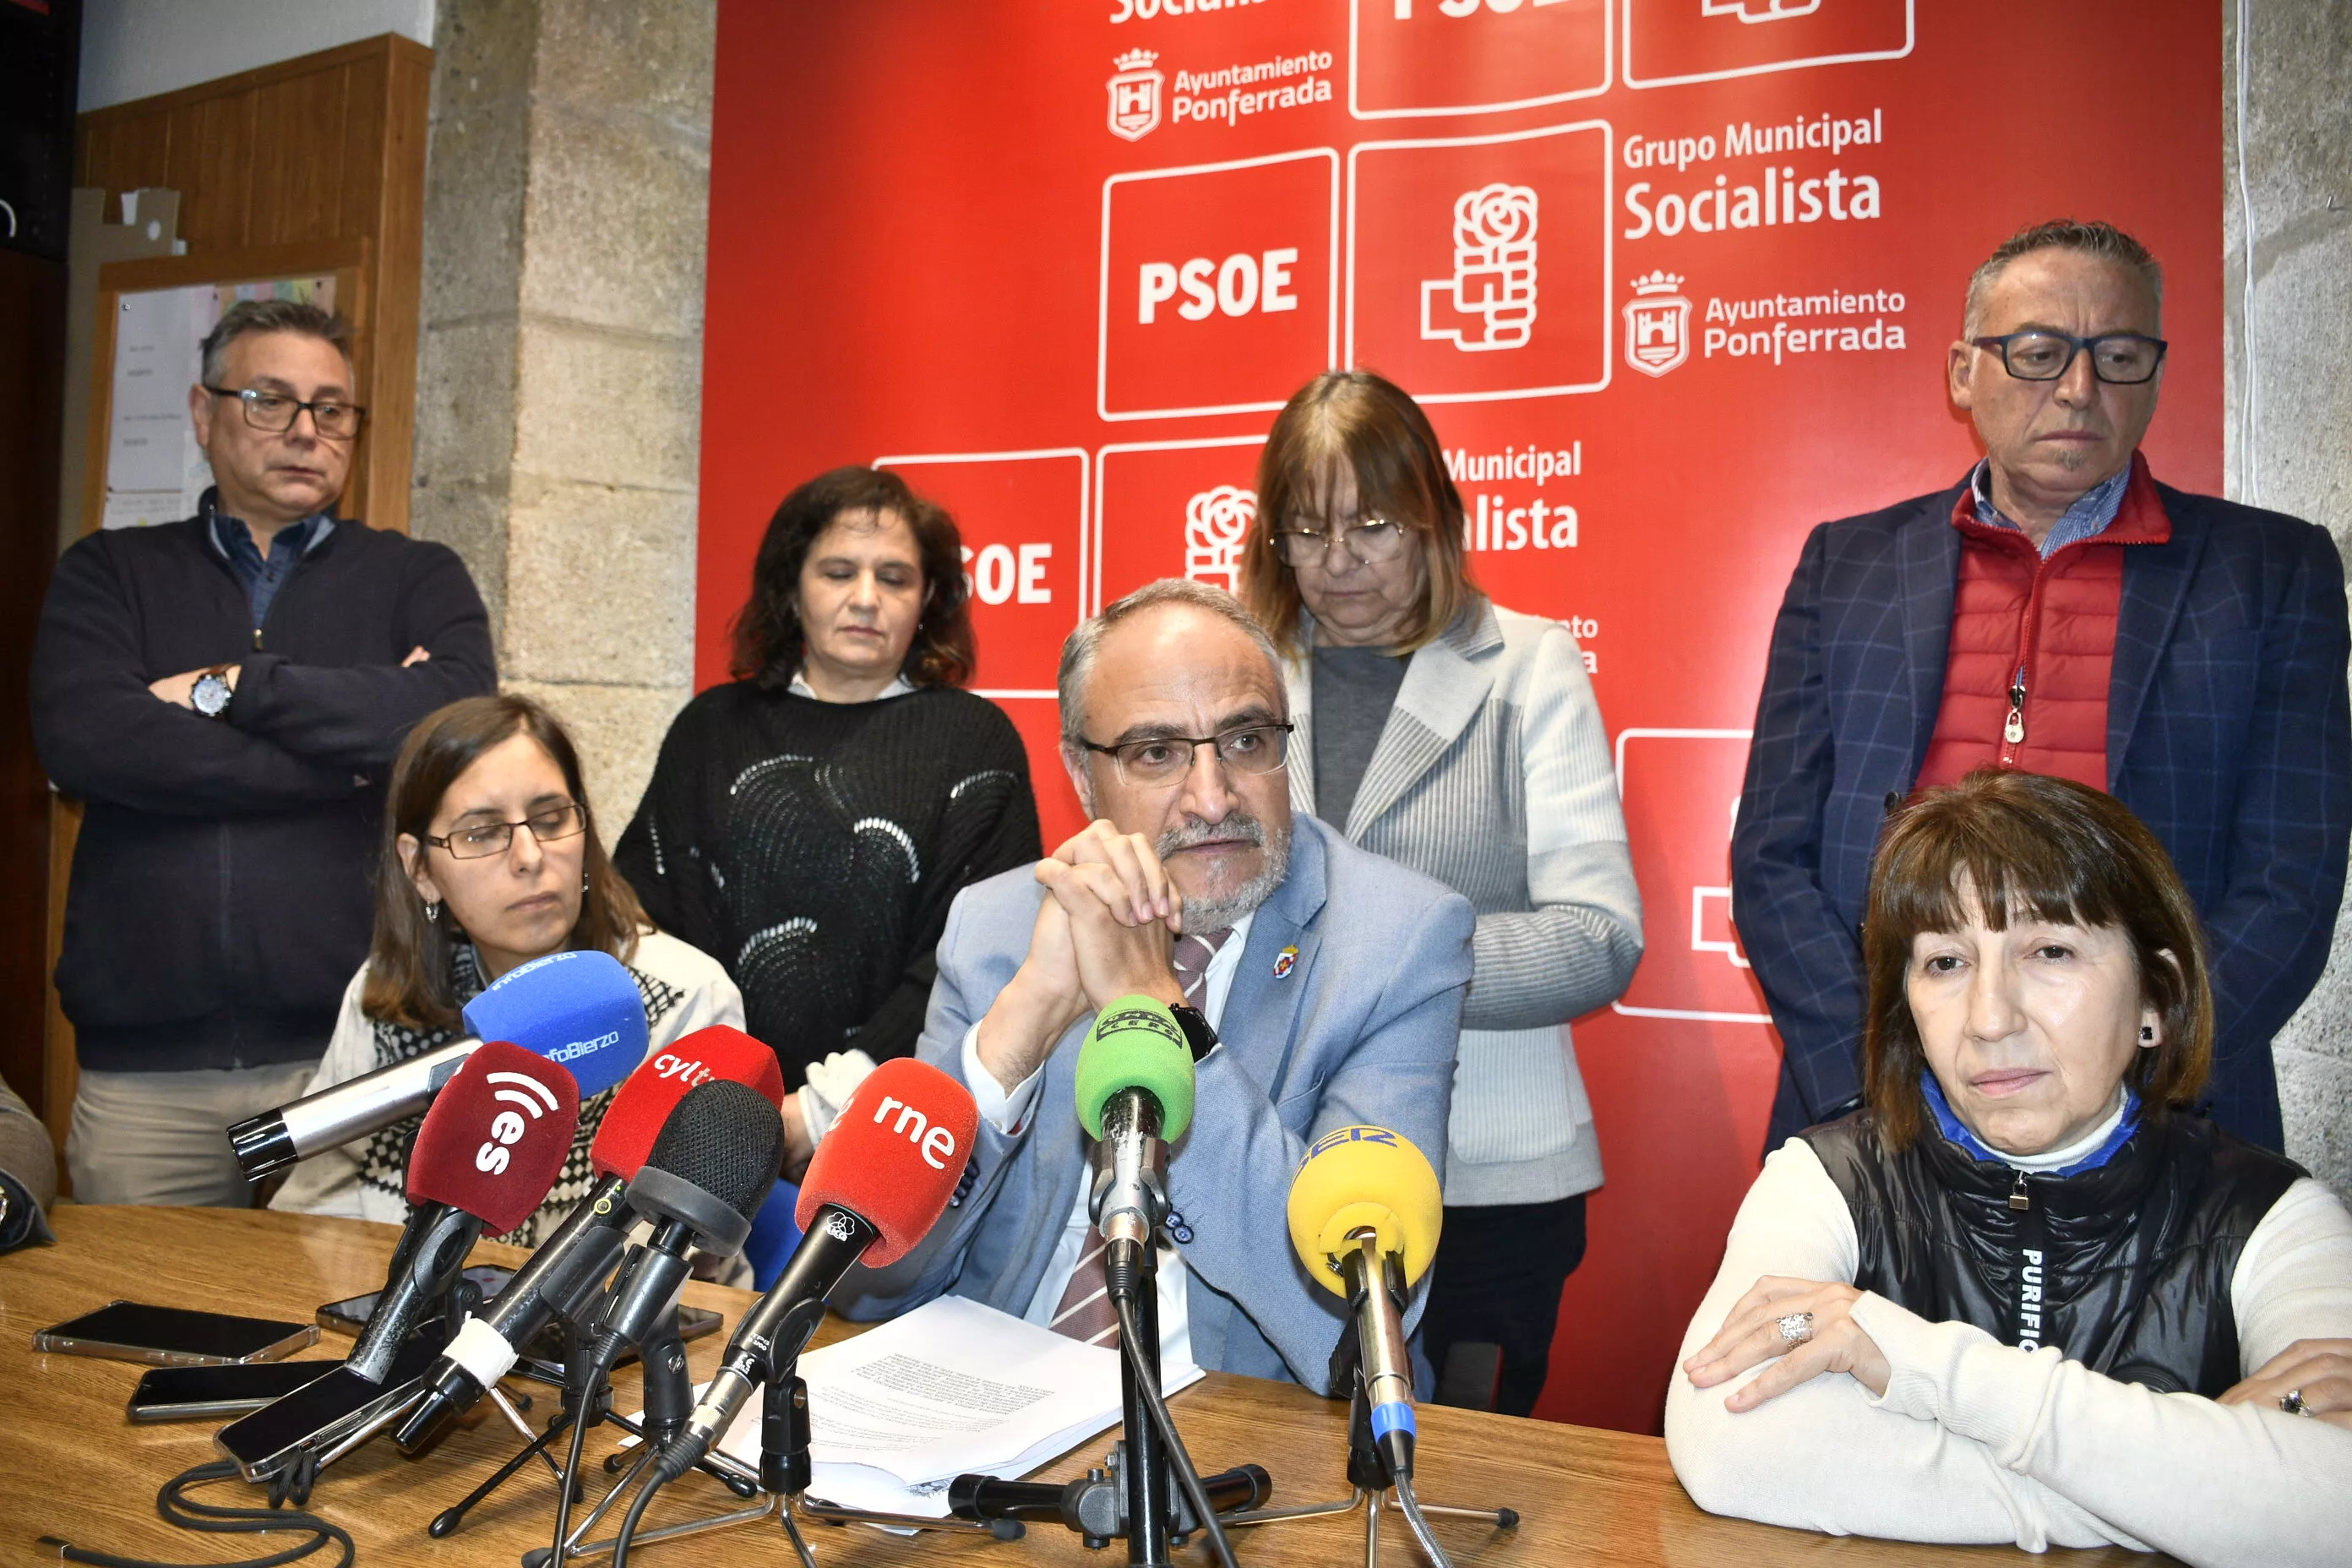 El PSOE considera la "el Urbanismo de va de Fiesta" en Ponferrada tras la supresión de una "vital" concejalía